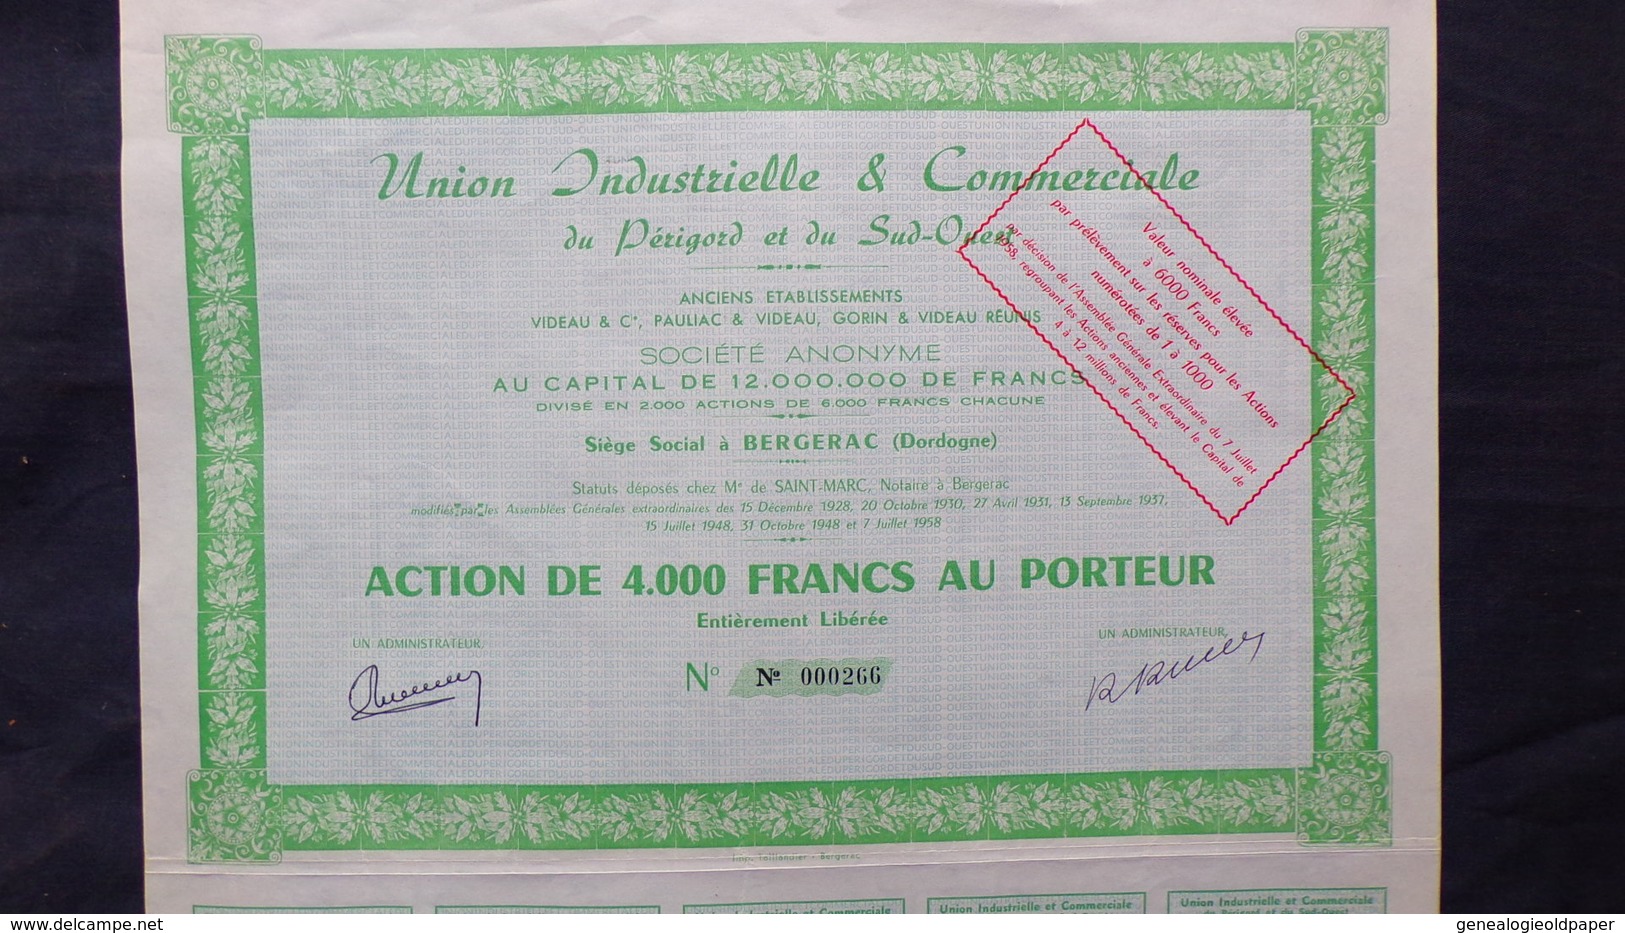 24- BERGERAC- RARE ACTION DE 4000 FRANCS AU PORTEUR-UNION INDUSTRIELLE COMMERCIALE DU PRIGORD -VIDEAU-PAULIAC-GORIN-1928 - Industry